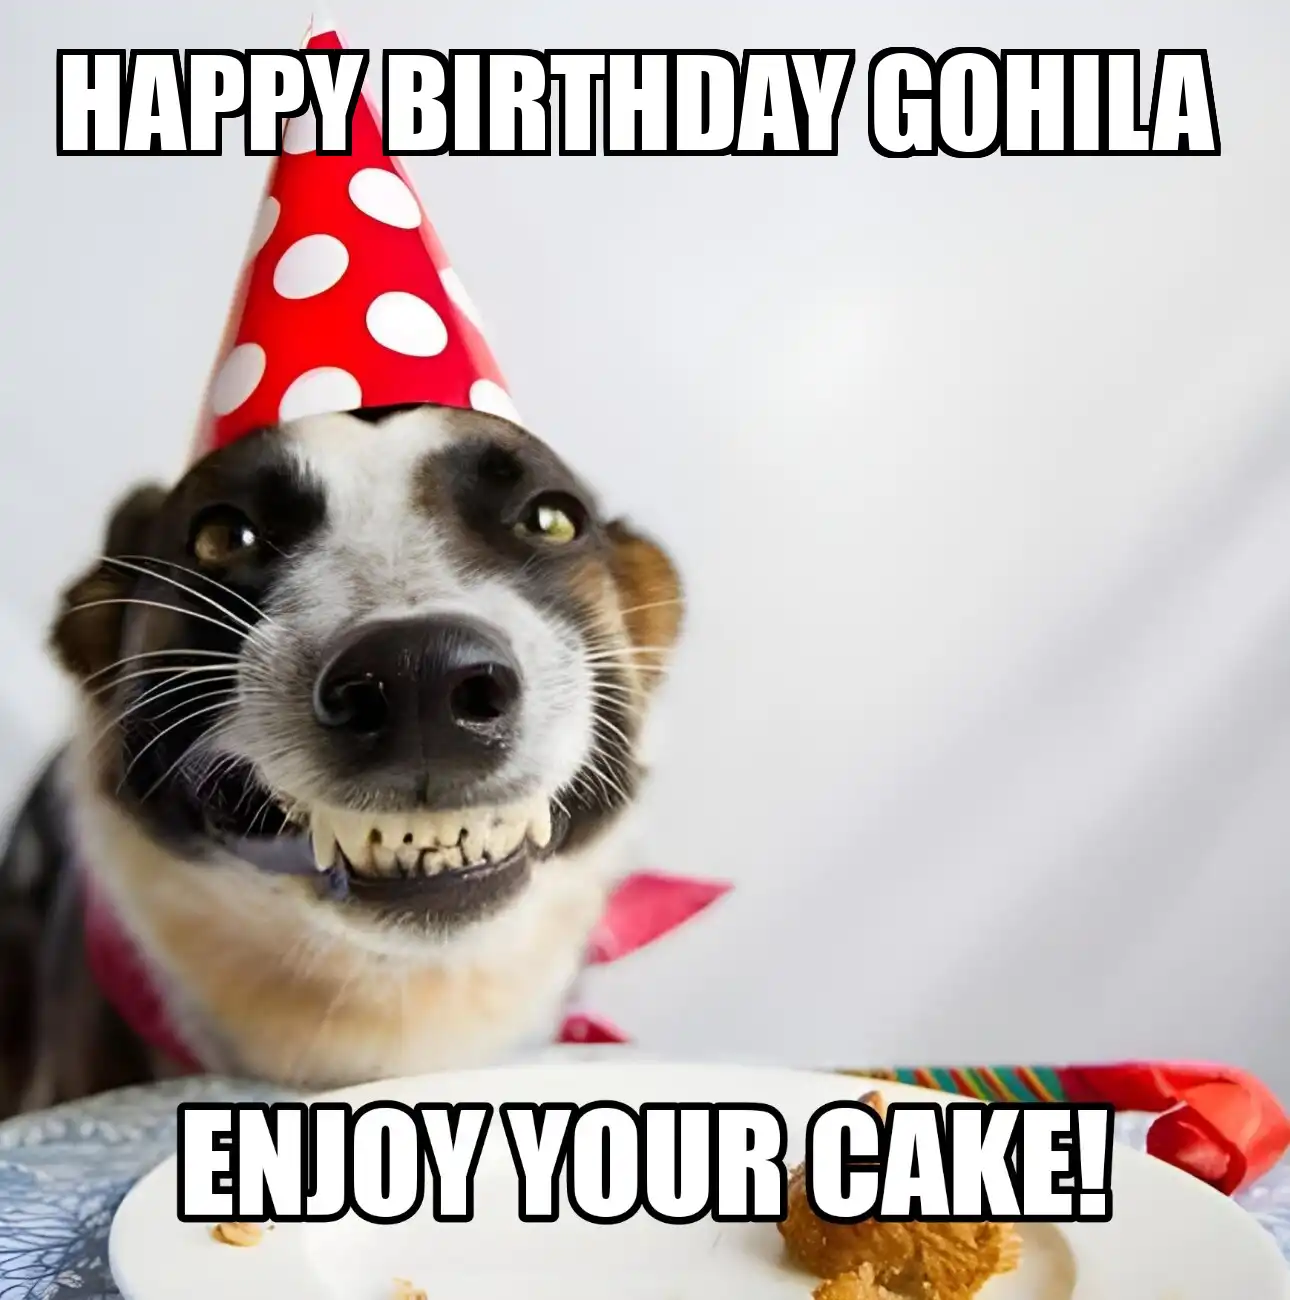 Happy Birthday Gohila Enjoy Your Cake Dog Meme